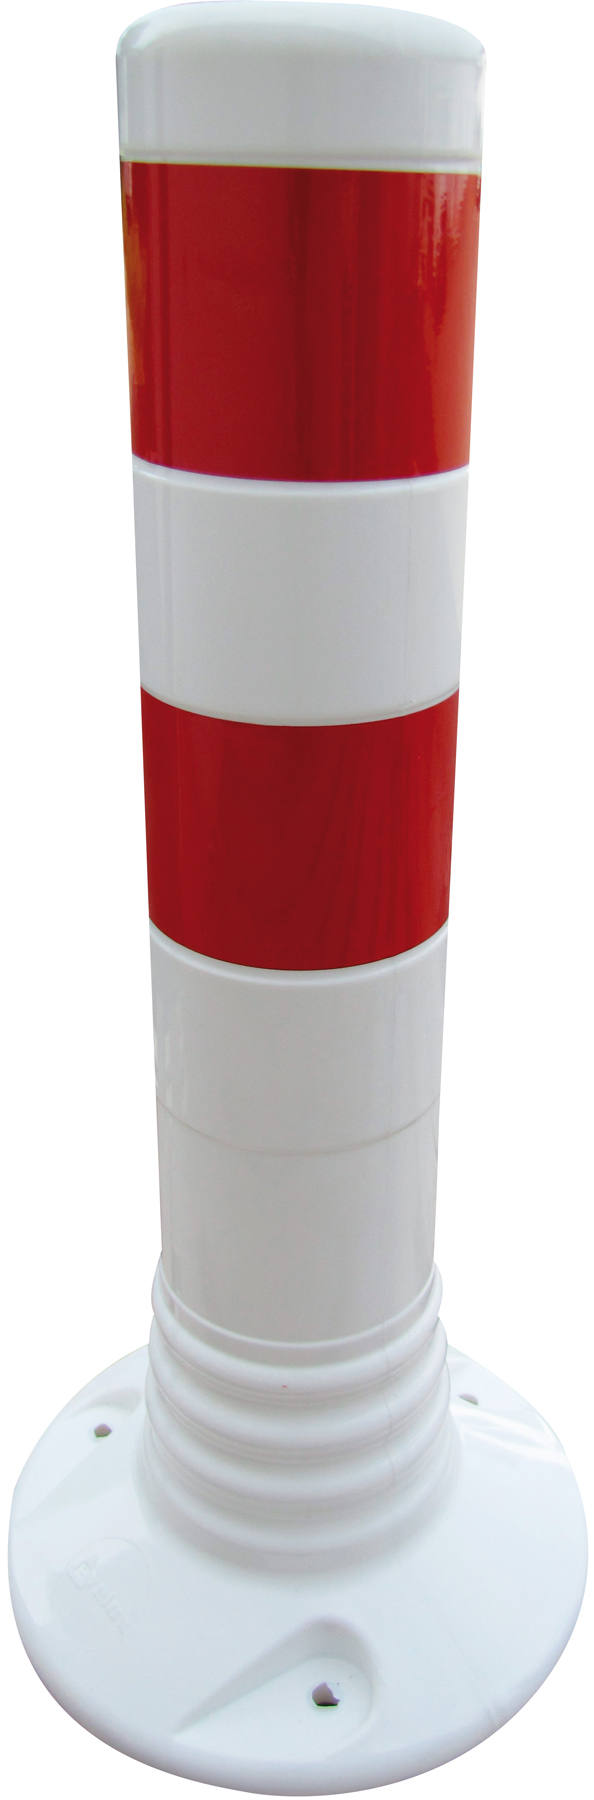 Schake Kunststoffpfosten weiß | rot - 450 mm